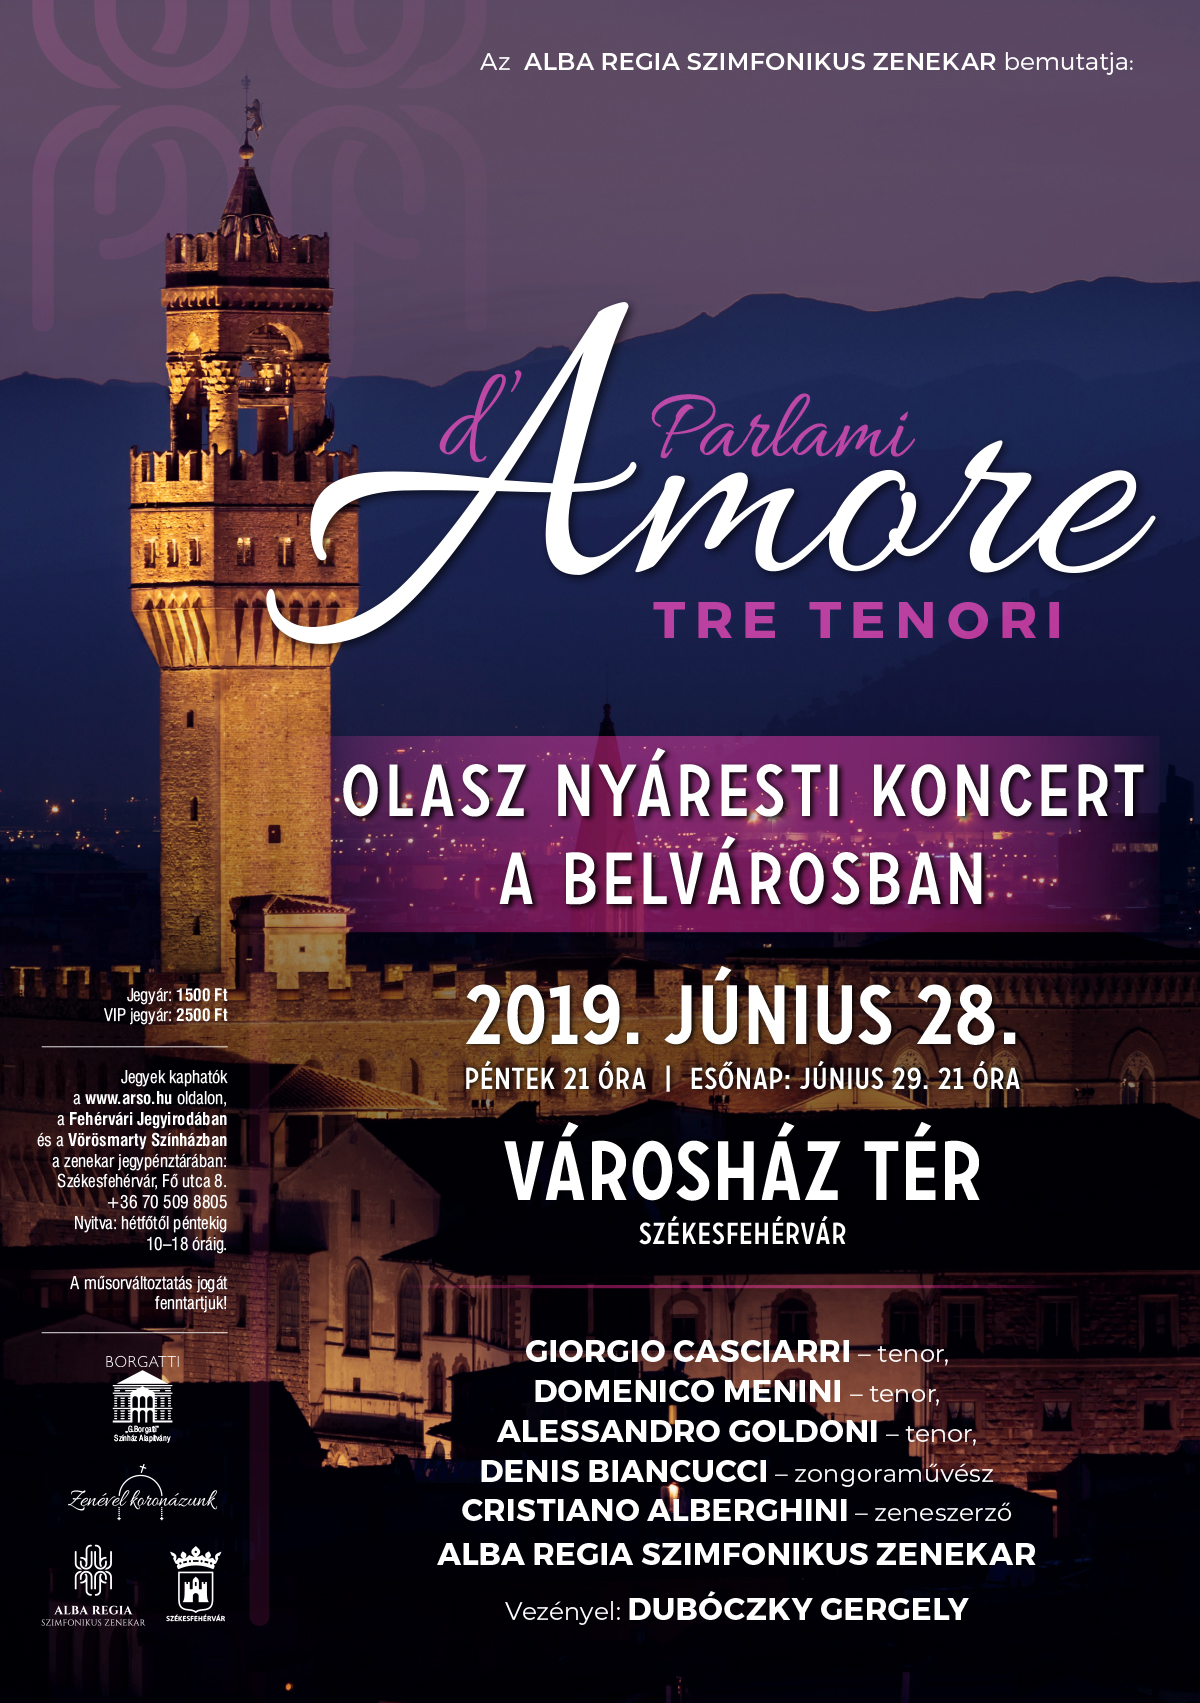 Olasz nyáresti koncert a Belvárosban három tenorral